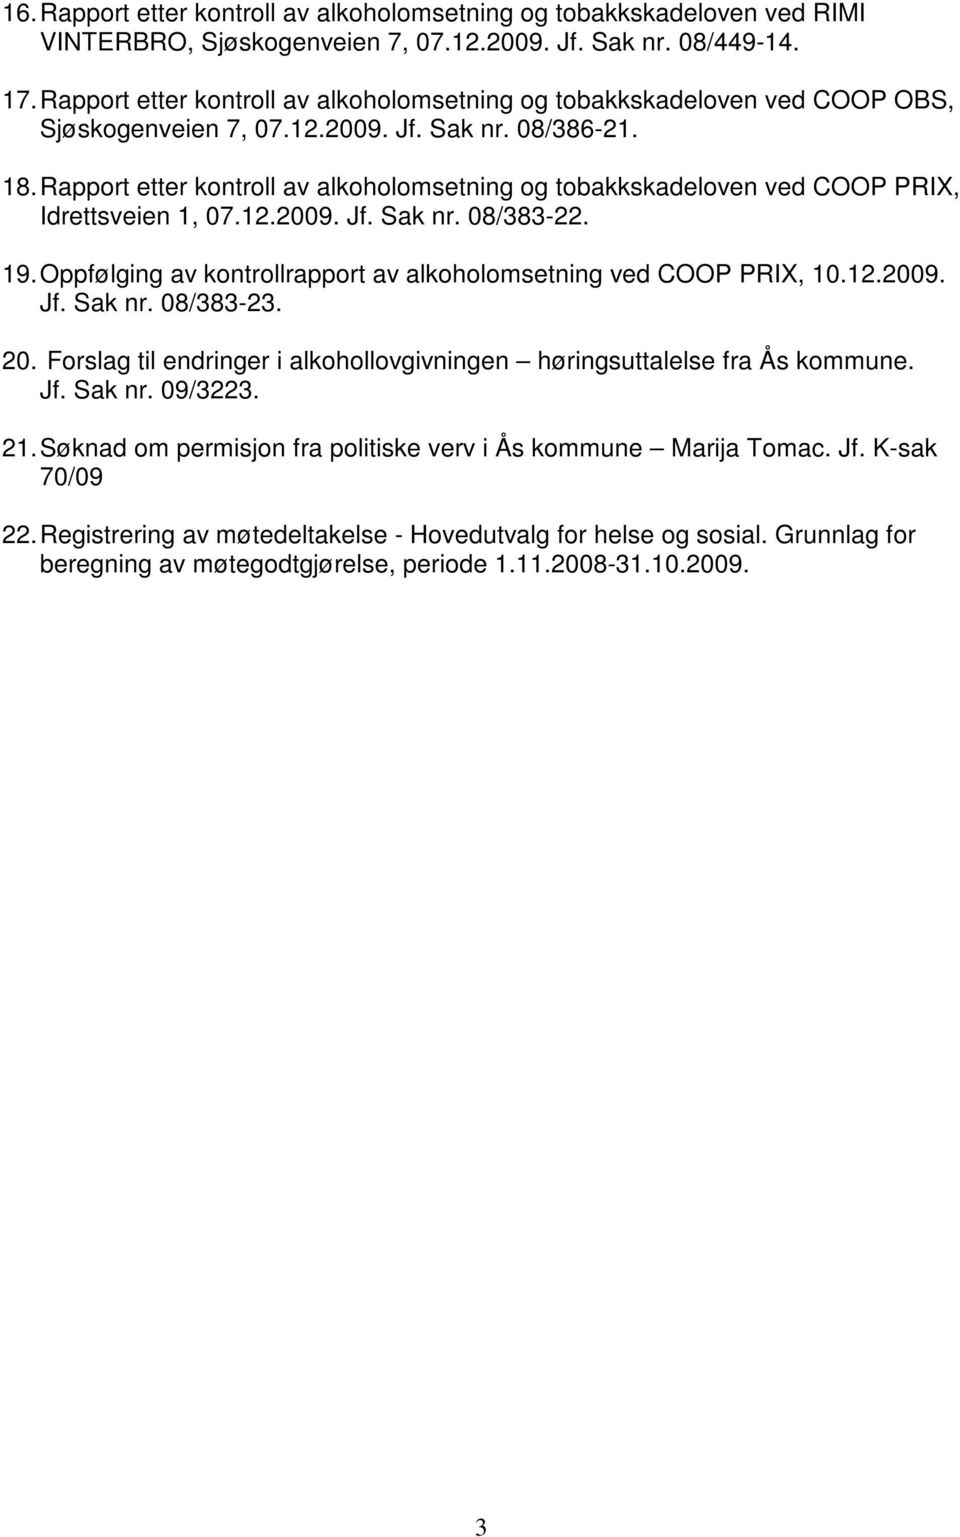 Rapport etter kontroll av alkoholomsetning og tobakkskadeloven ved COOP PRIX, Idrettsveien 1, 07.12.2009. Jf. Sak nr. 08/383-22. 19.